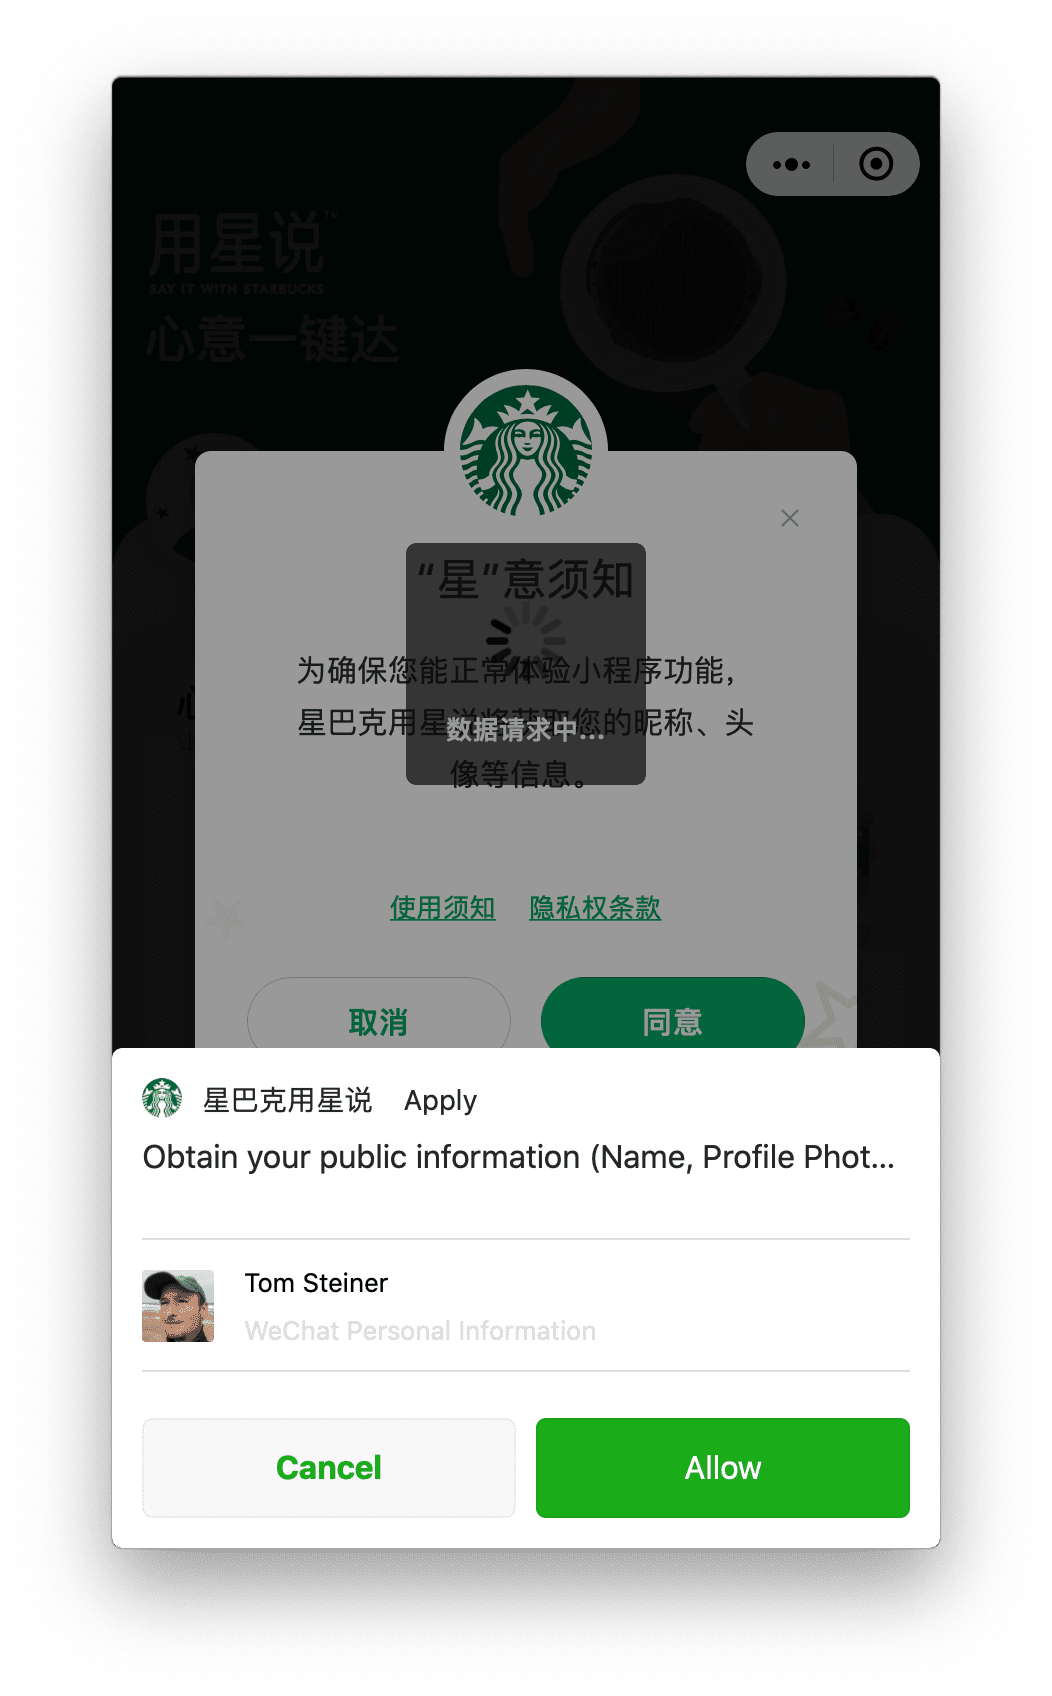 تطبيق Starbucks المصغّر الذي يعمل على نظام التشغيل macOS يطلب الحصول على إذن الملف الشخصي للمستخدم الذي يمكن للمستخدم منحه من خلال طلب يظهر في أسفل الصفحة.